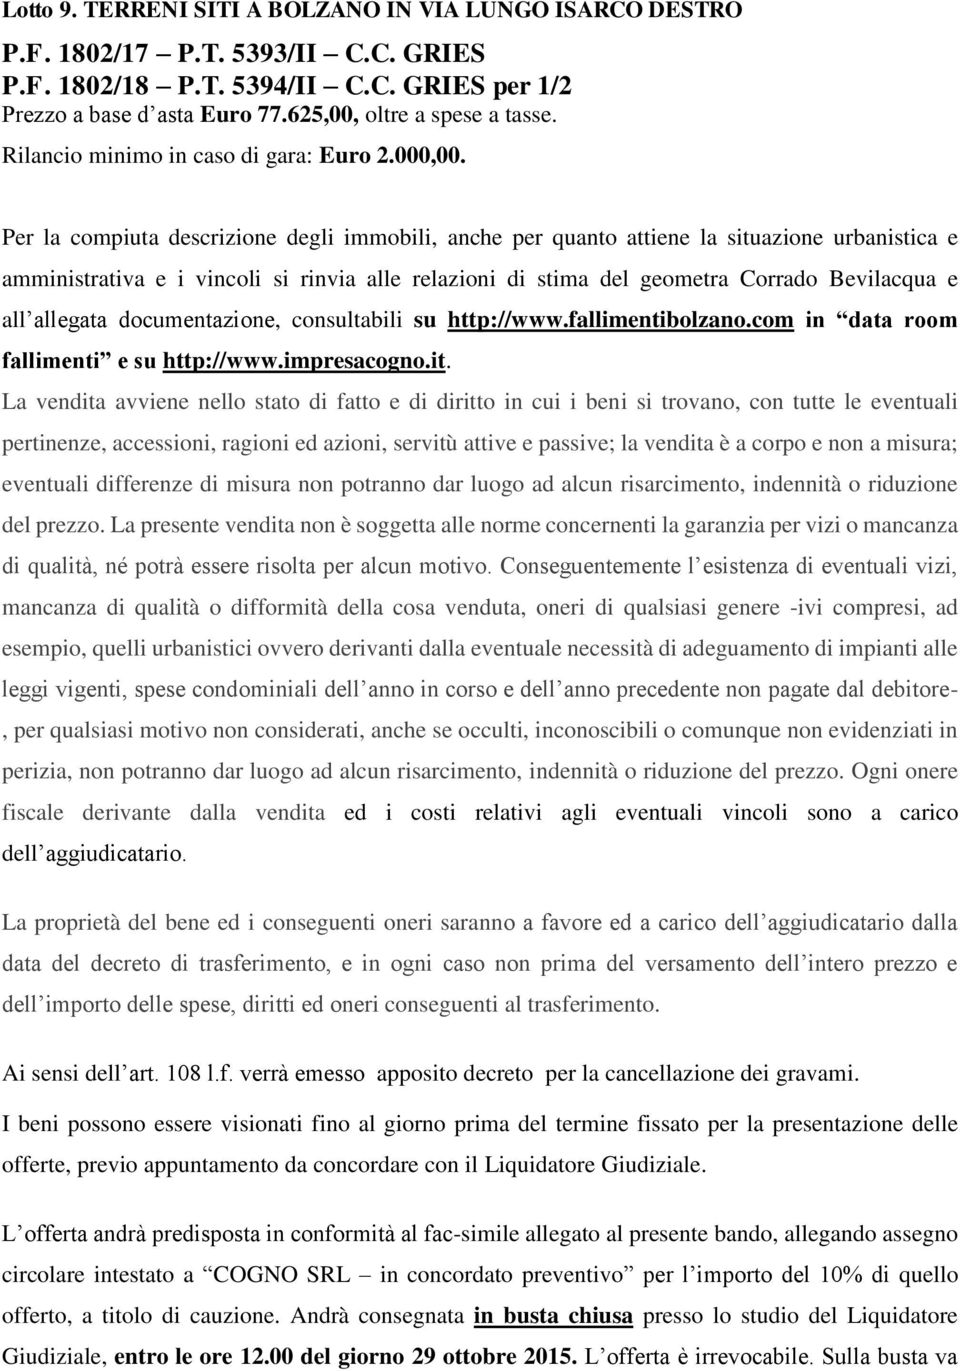 allegata documentazione, consultabili su http://www.fallimentibolzano.com in data room fallimenti e su http://www.impresacogno.it.